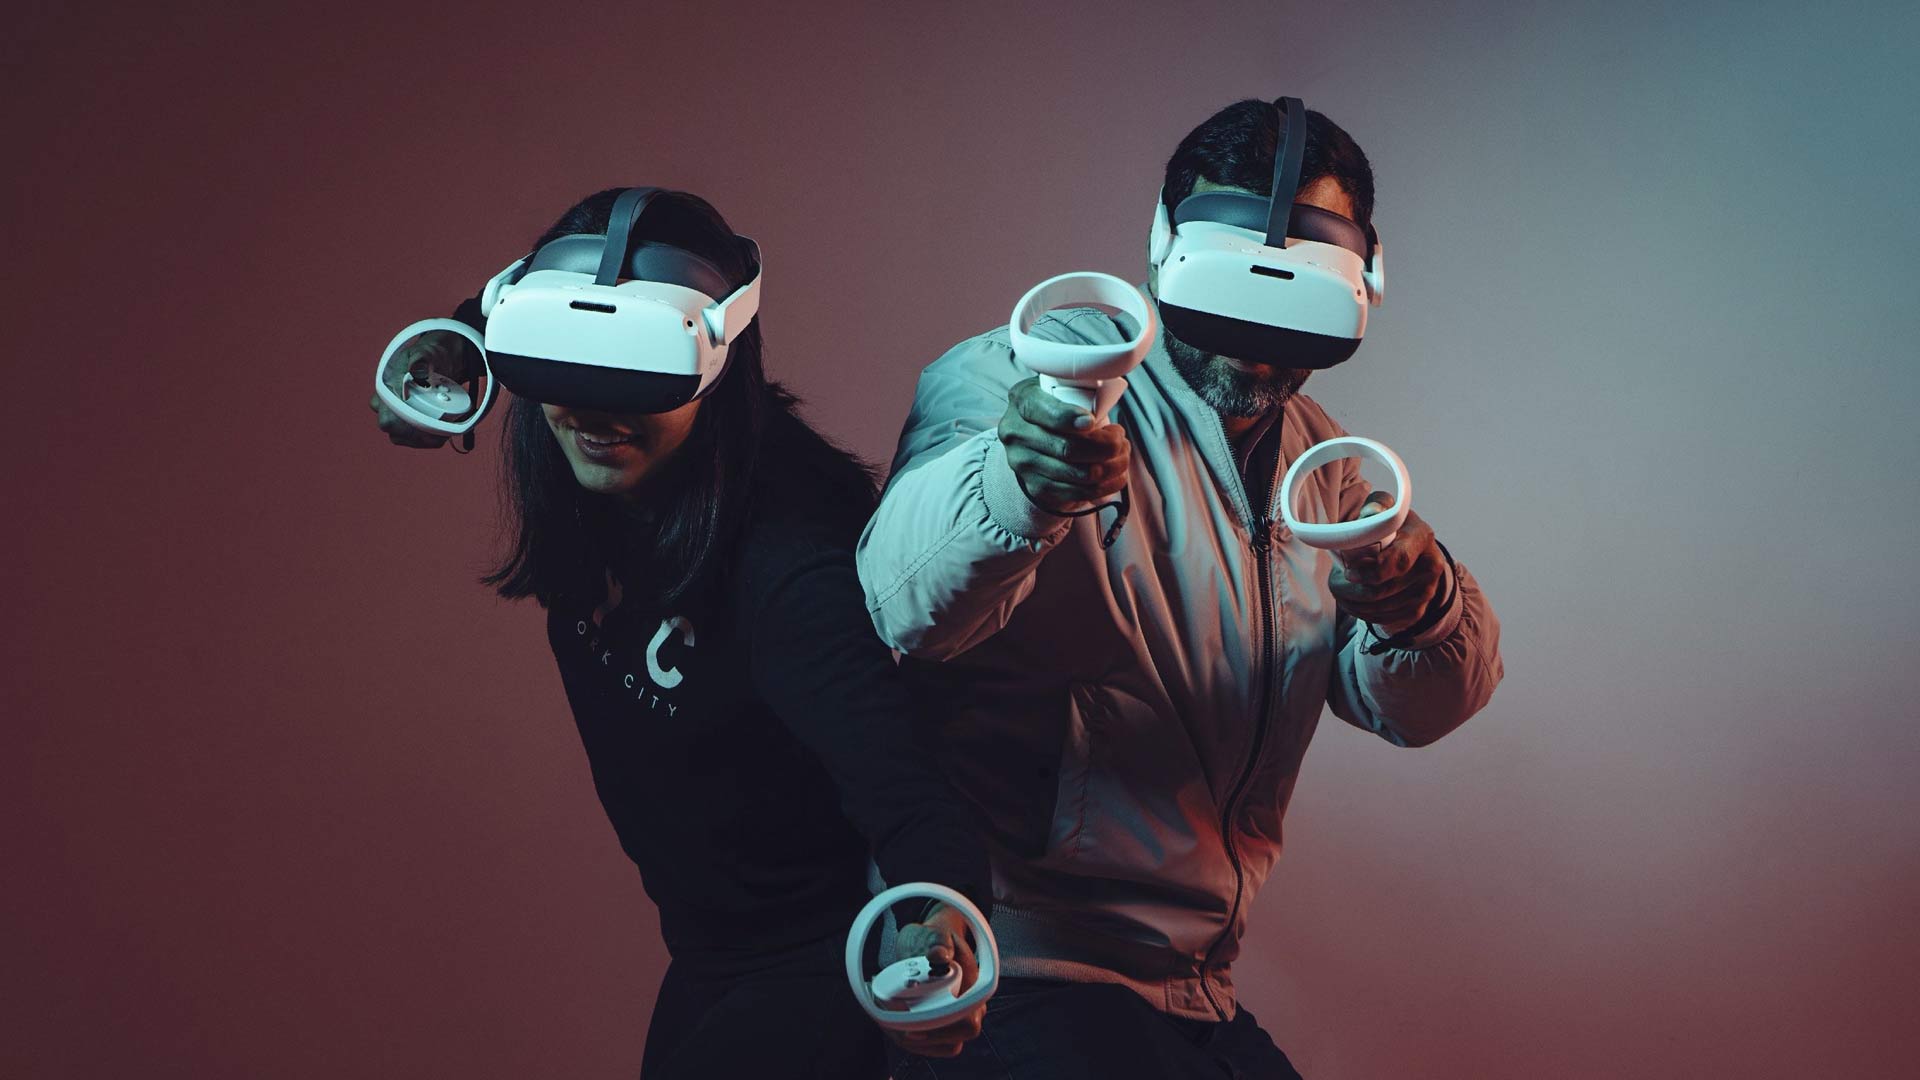 Le casque Pico, projet VR ayant le plus de succès en chine actuellement.